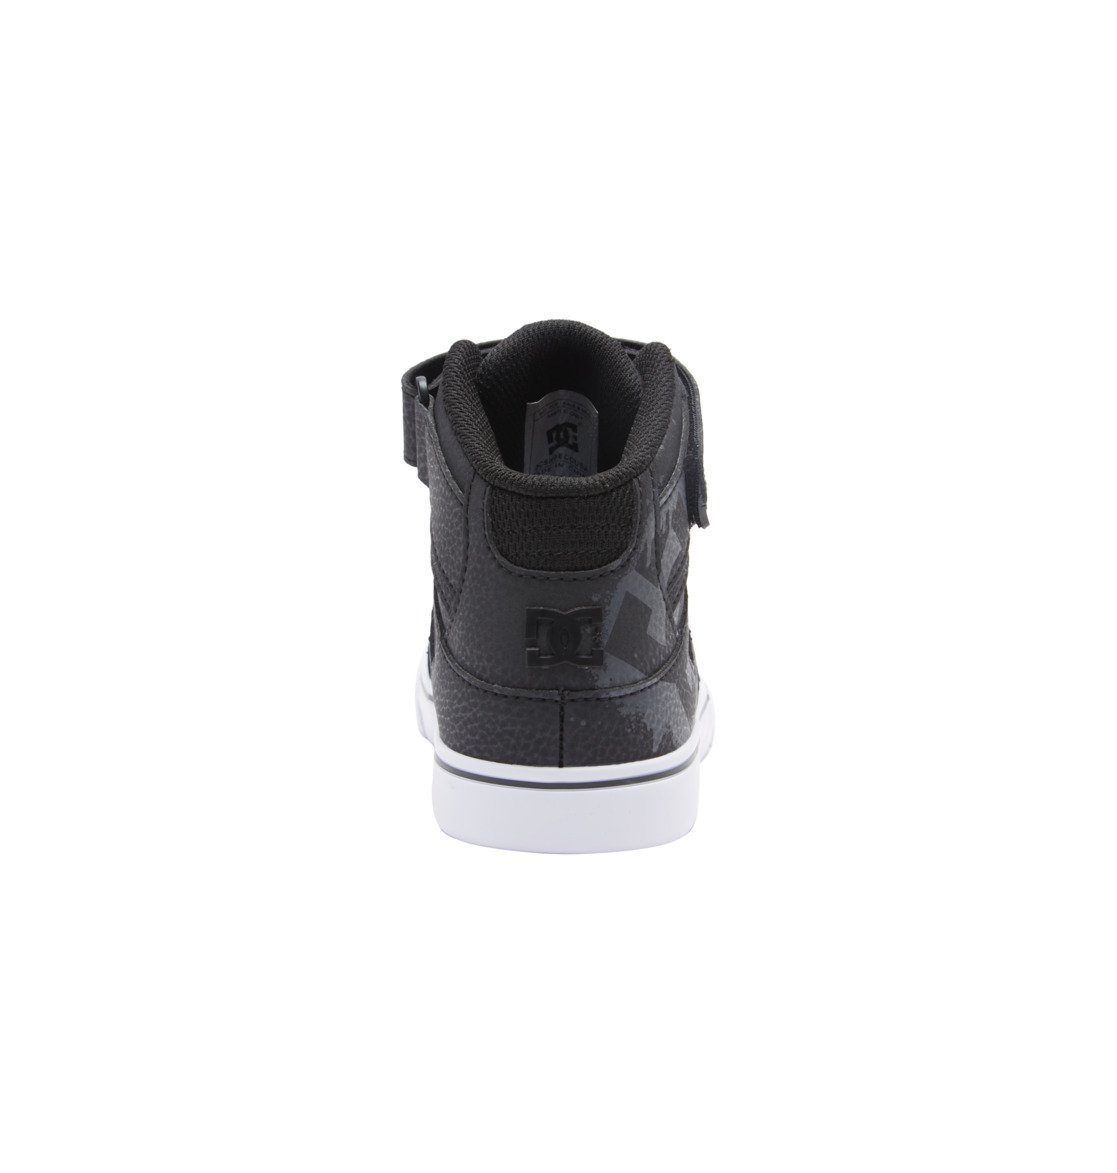 DC Shoes Pure Hi Sneaker SE Black/White/Black